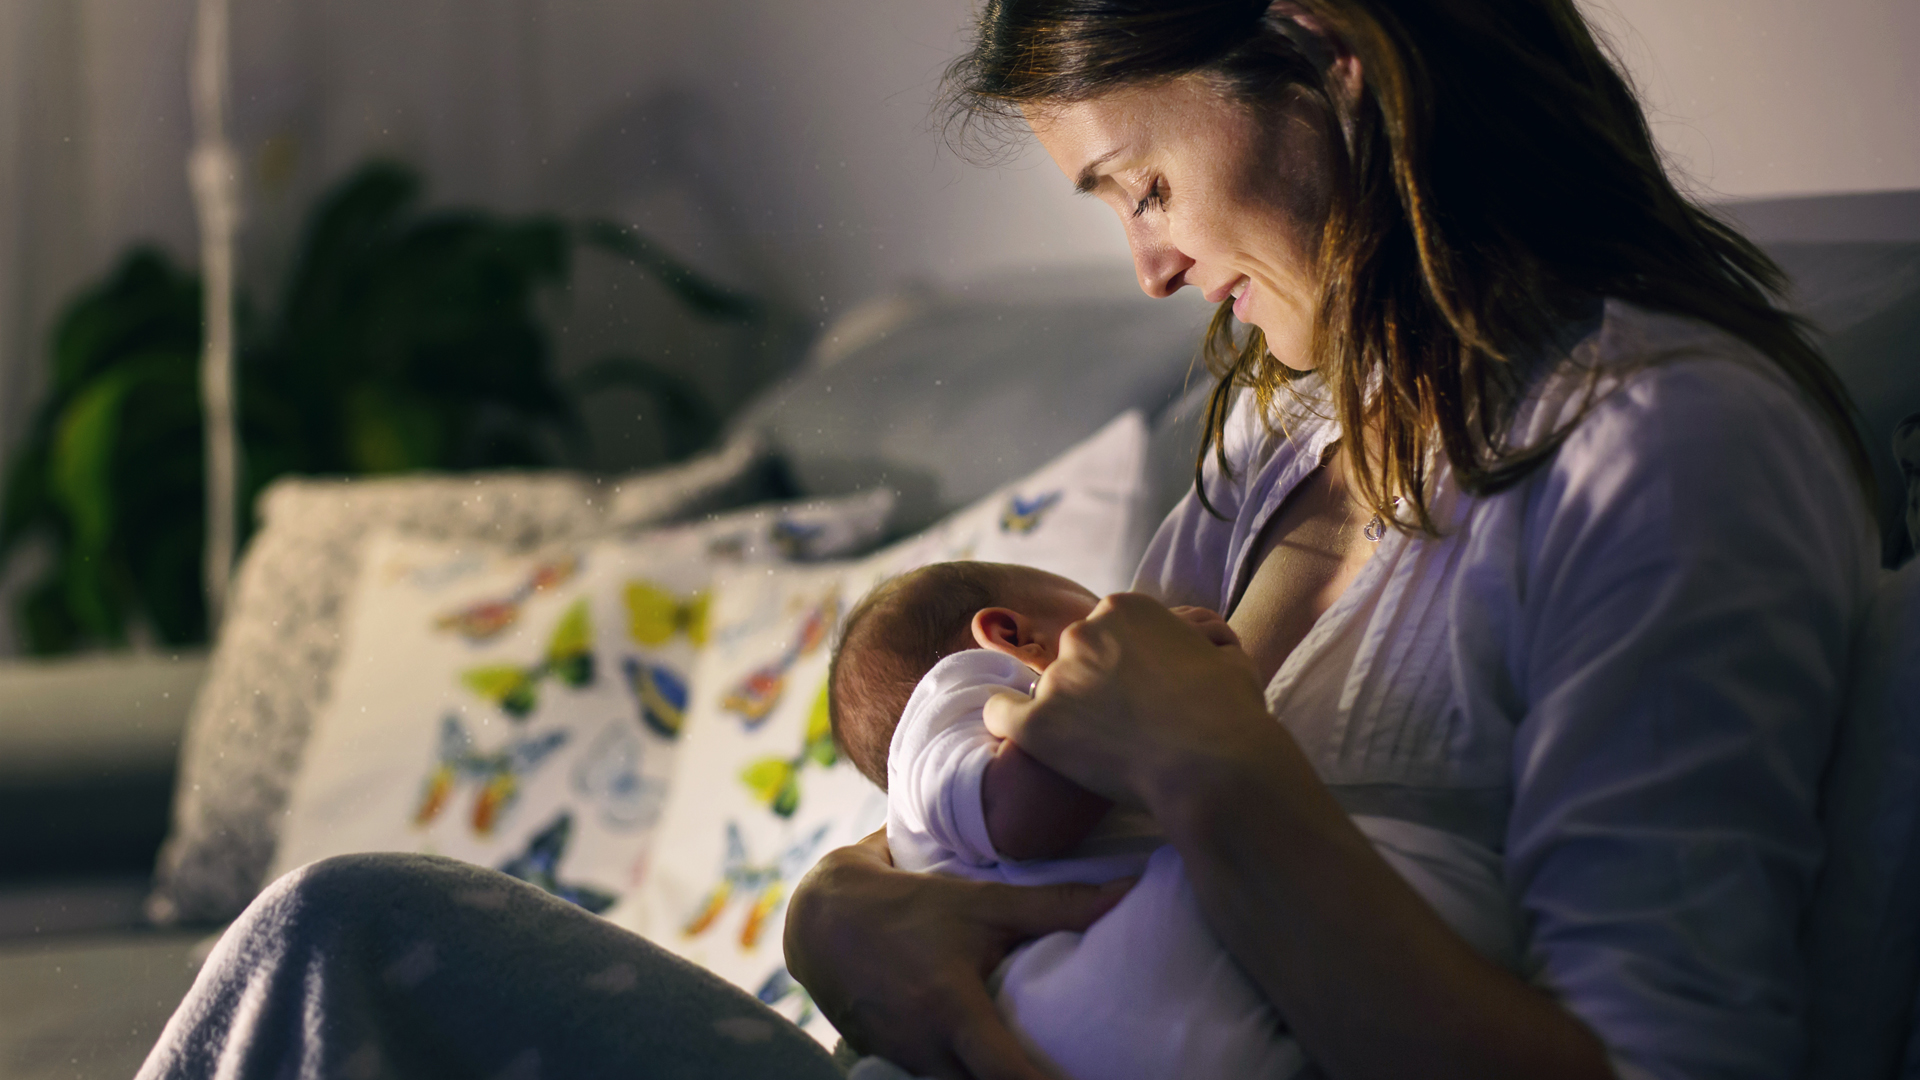 Lactancia materna en la pospandemia: respuestas a las dudas más frecuentes